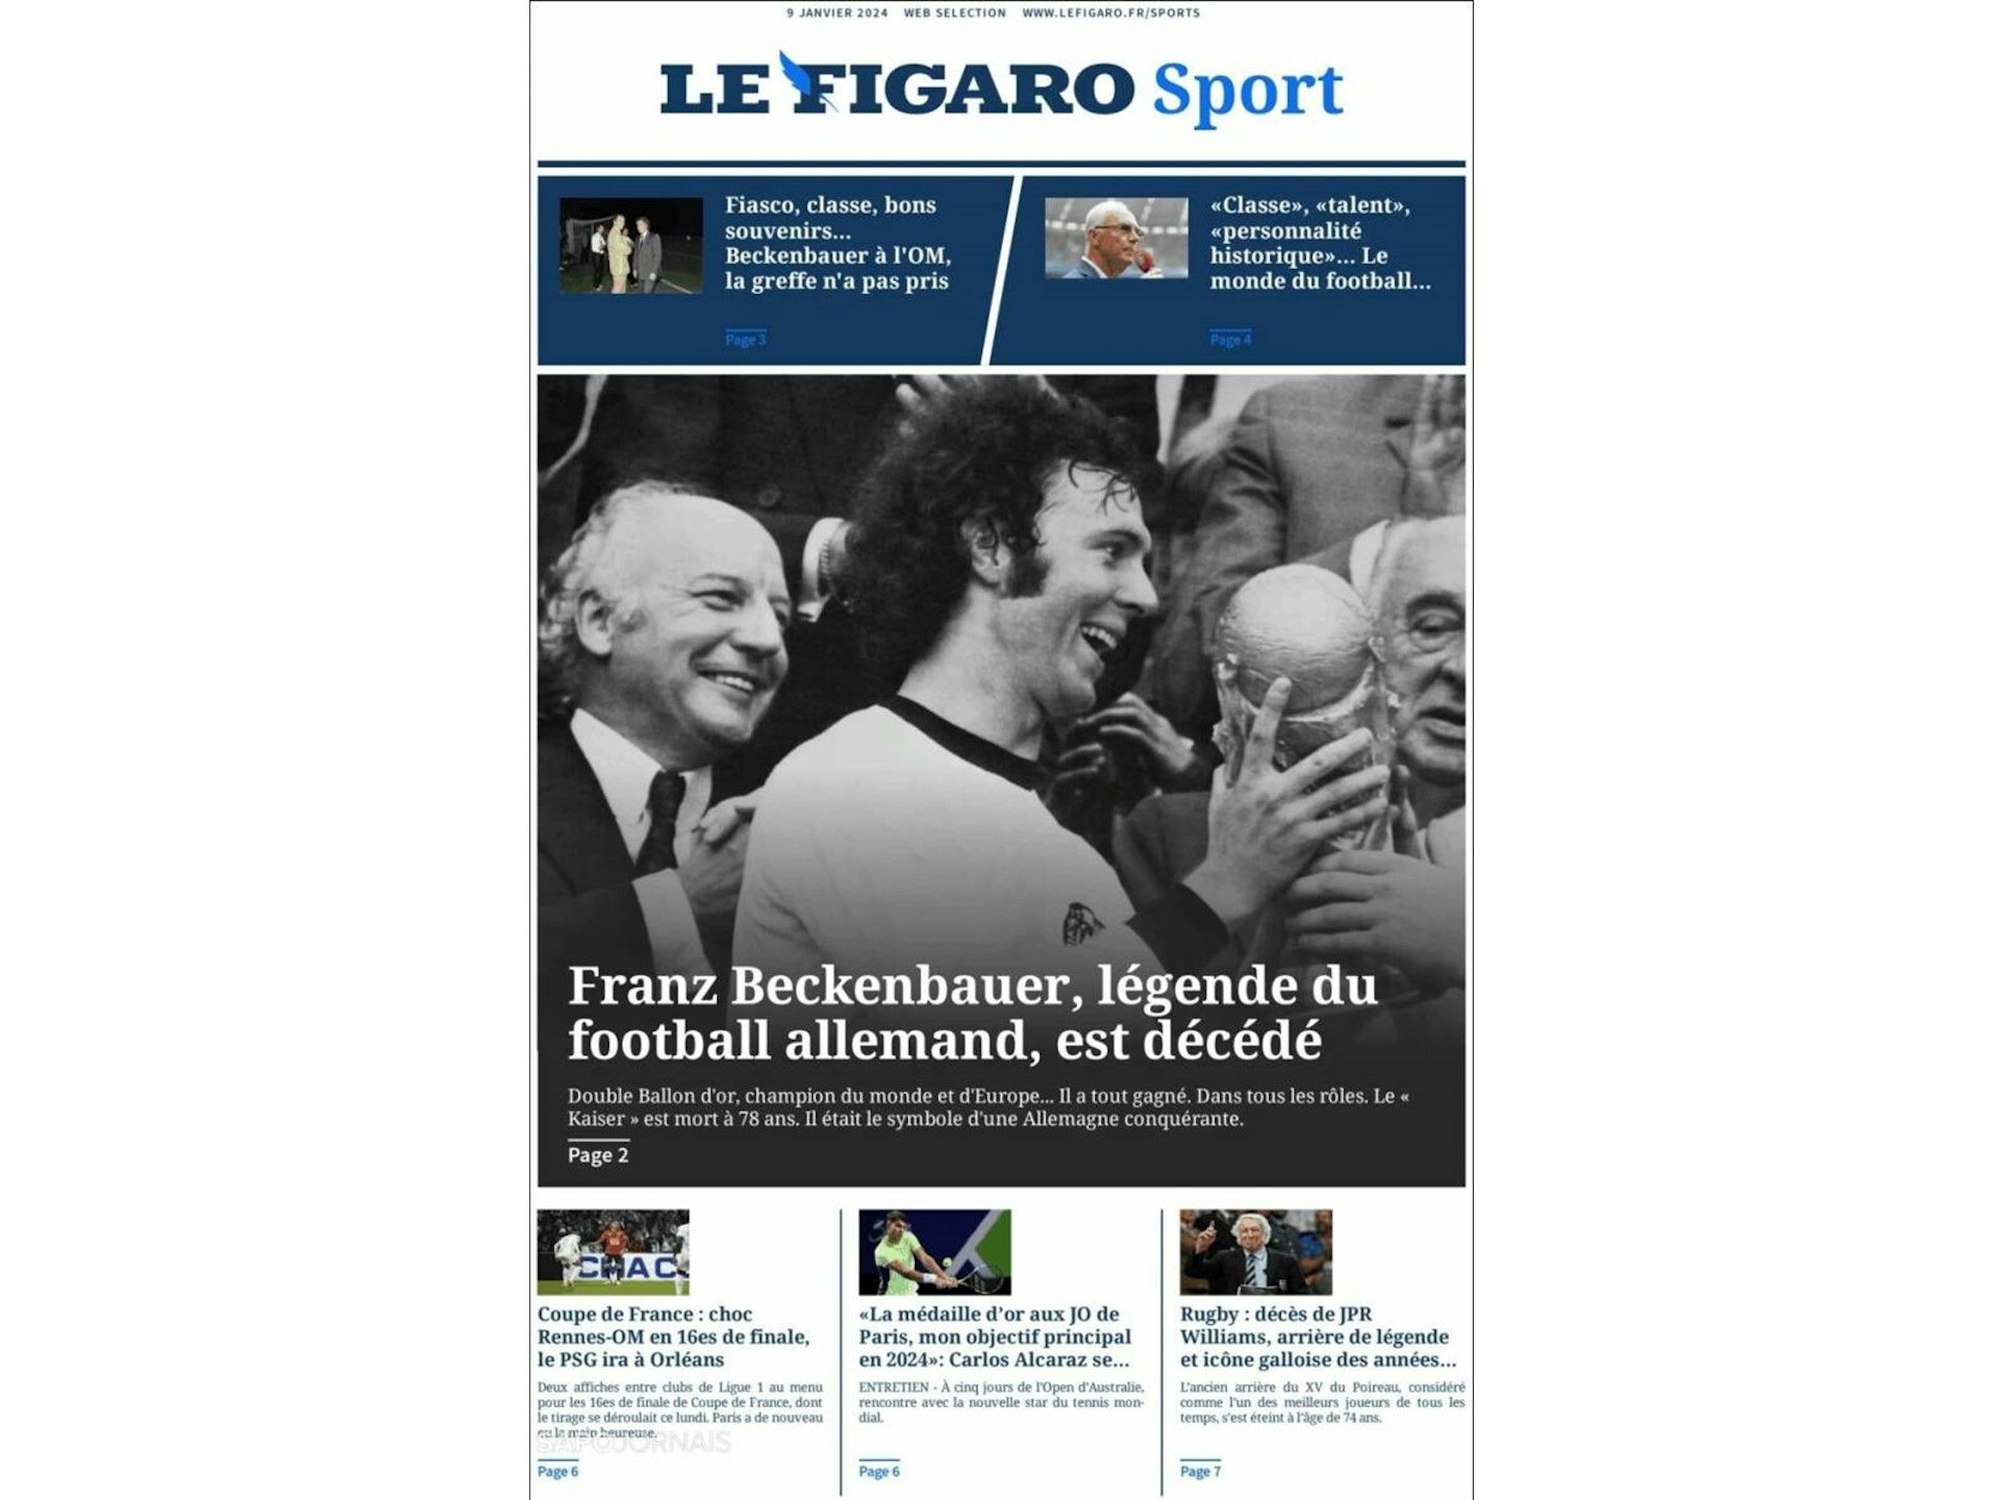 Cover der Zeitung Le Figaro in Frankreich.